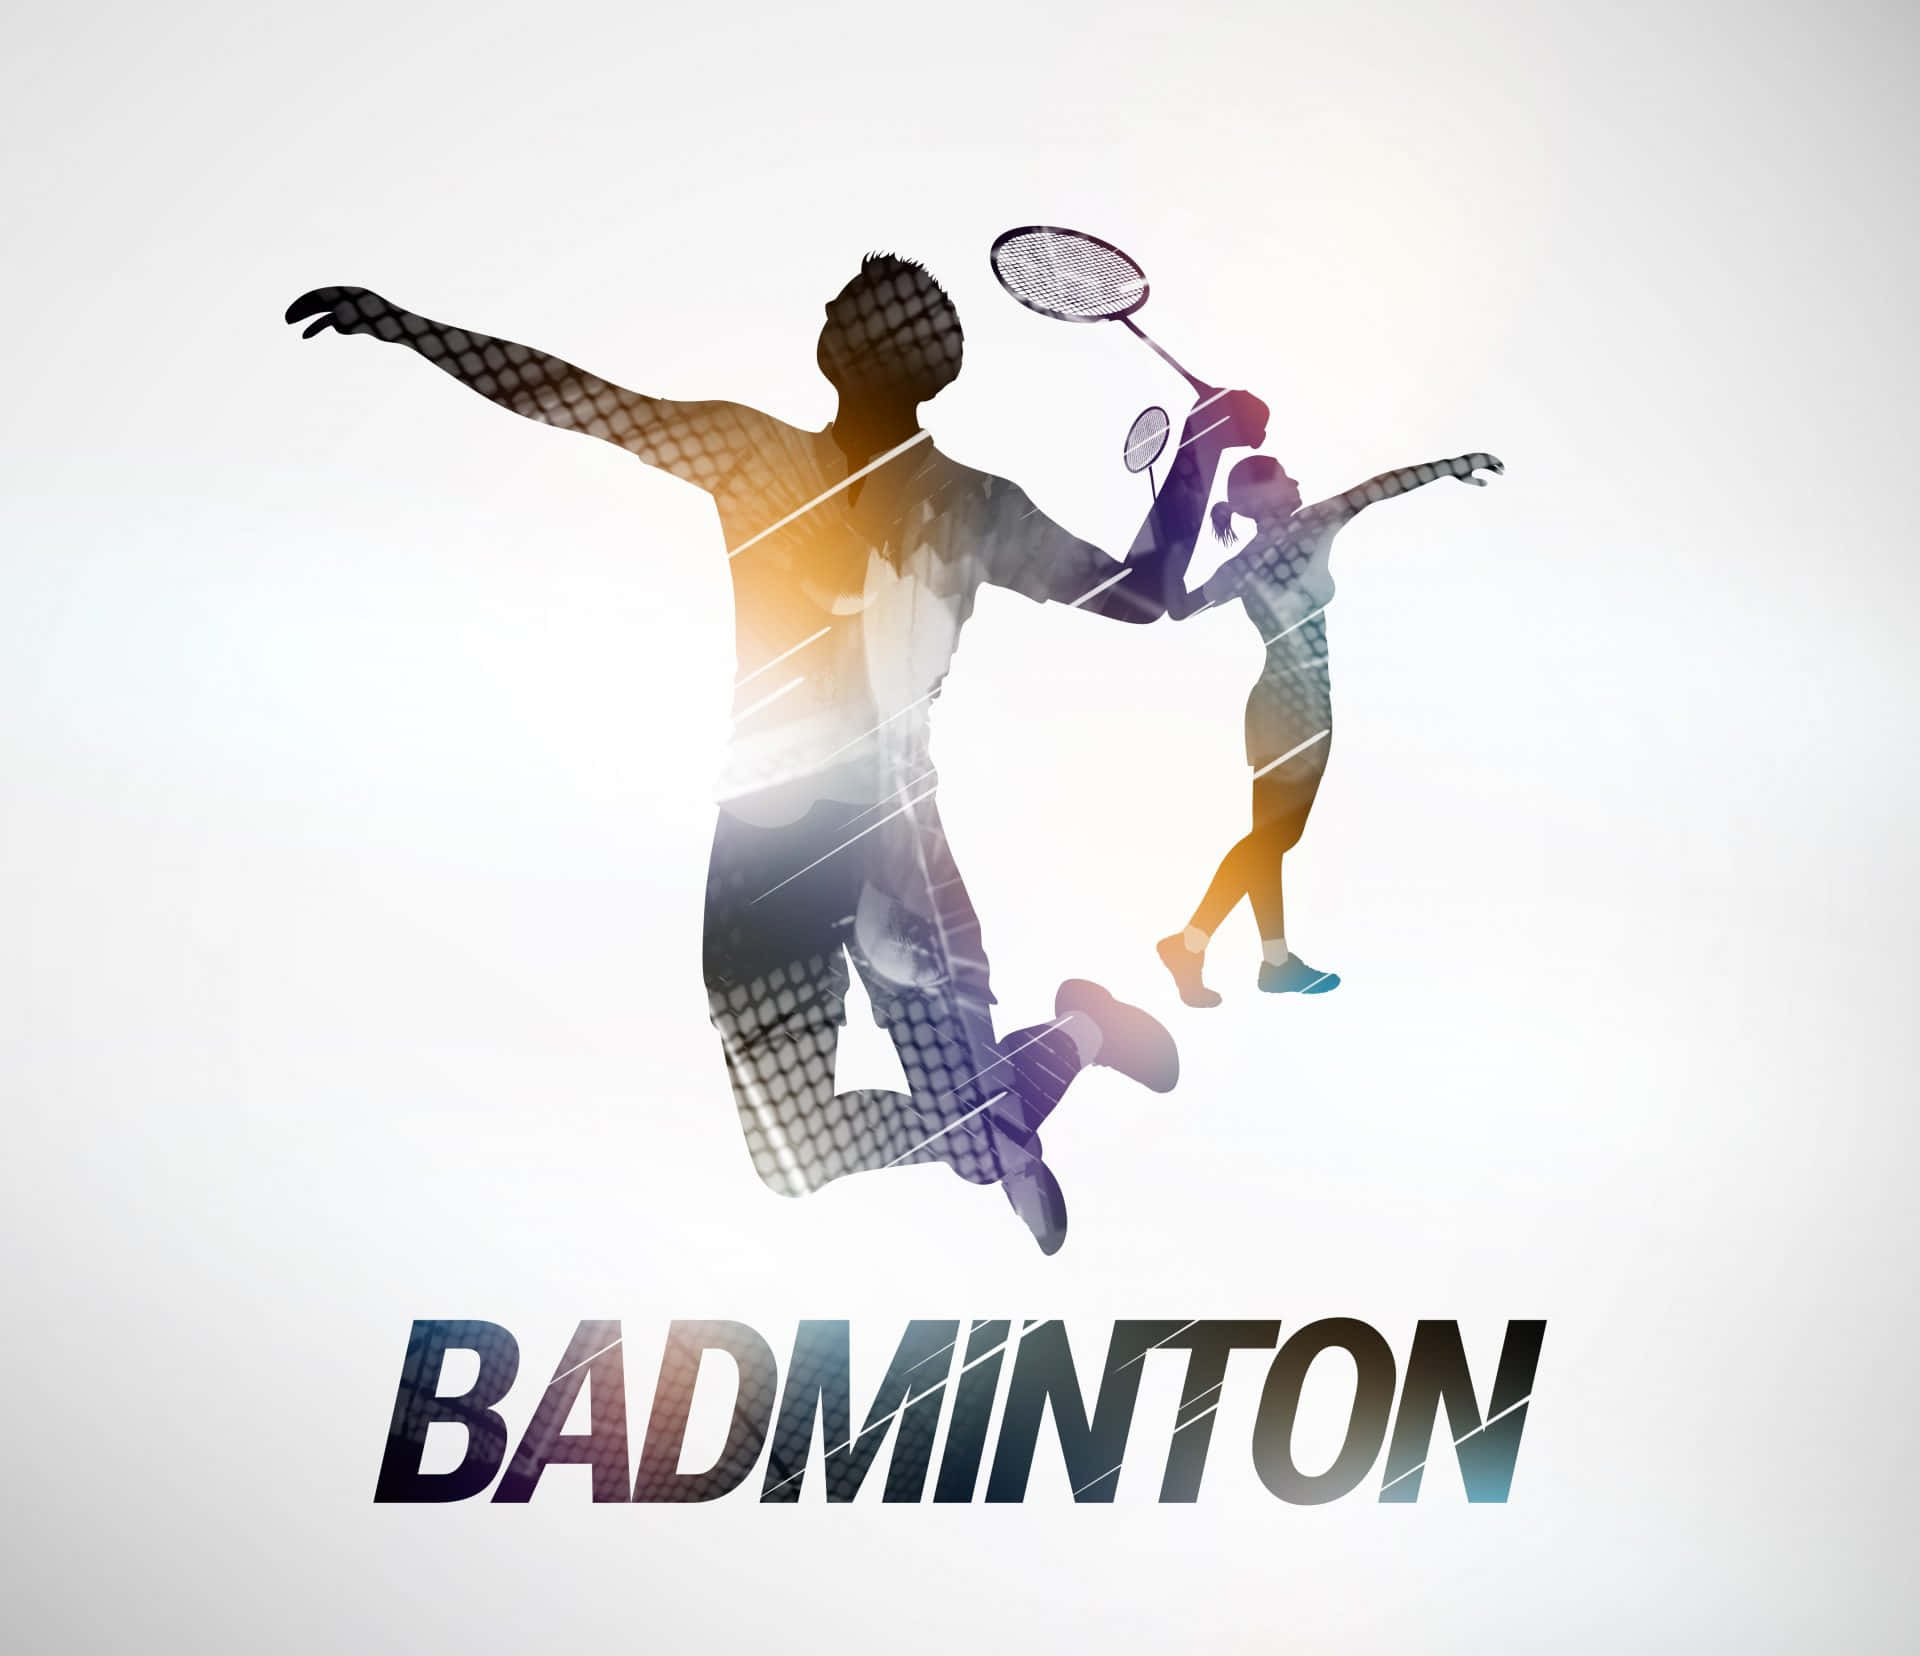 Rivelatele Migliori Mosse Del Badminton